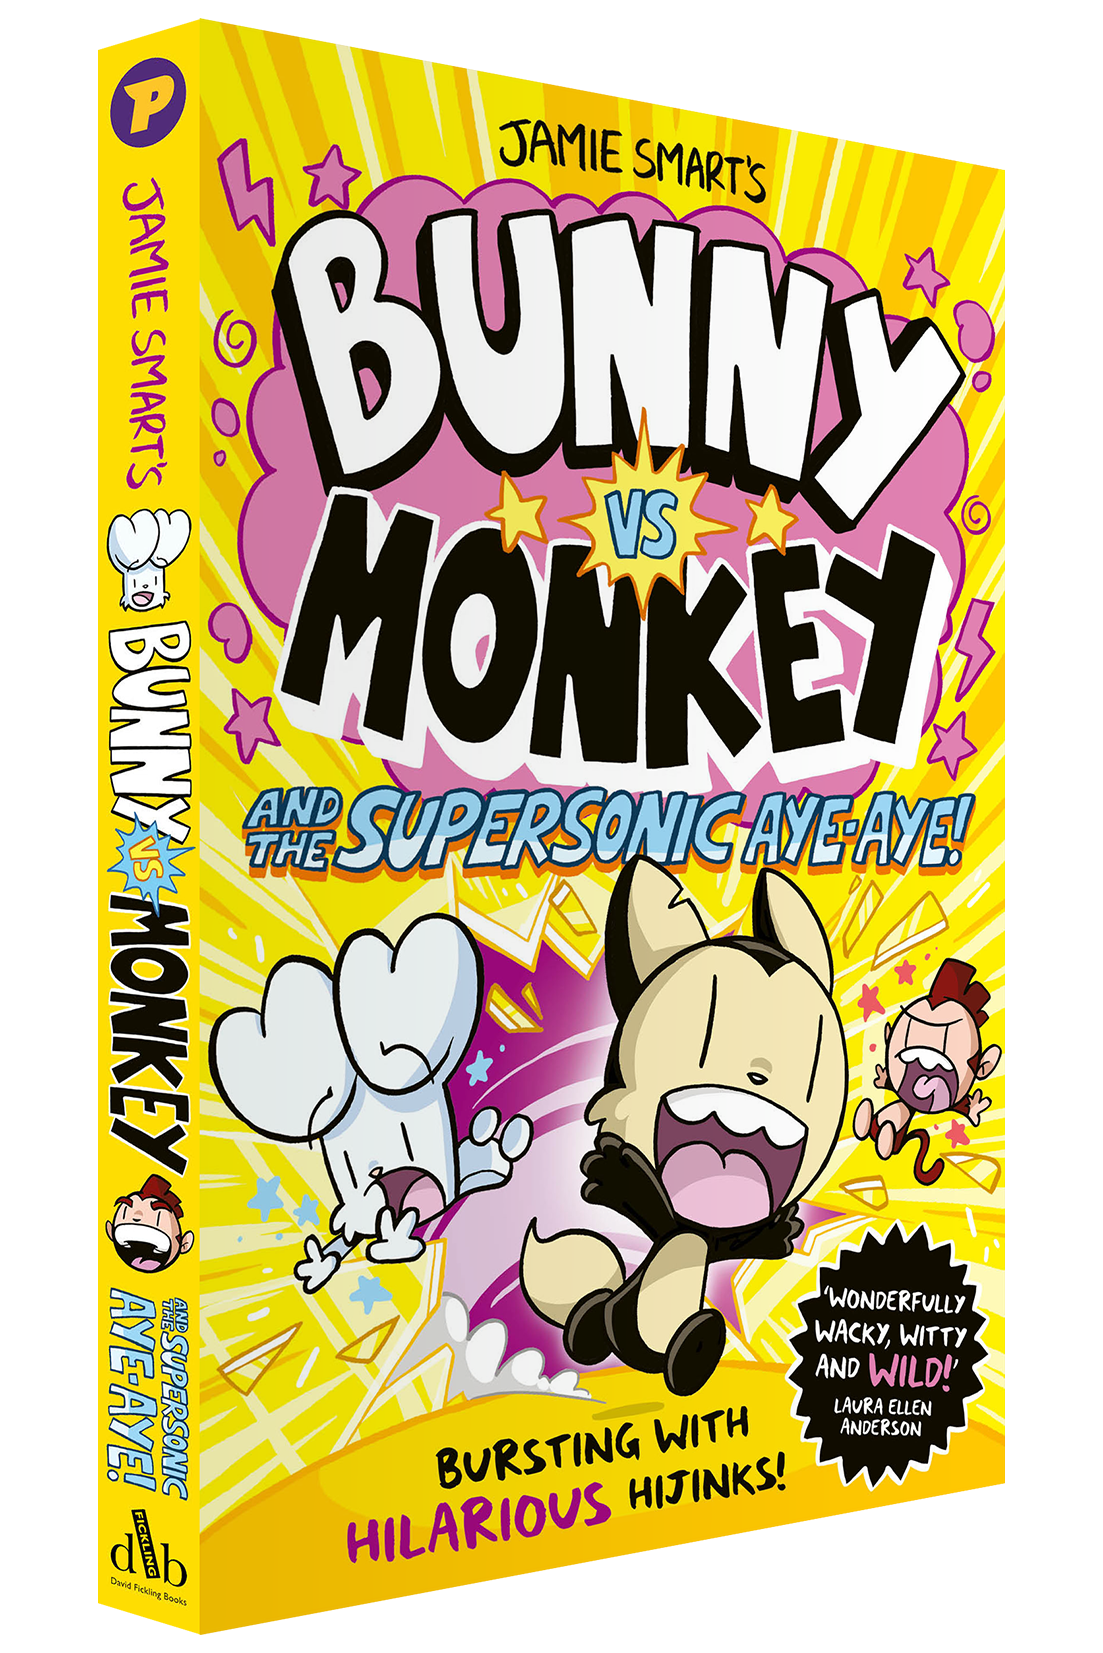 Bunny vs Monkey 4: The Supersonic Aye-aye